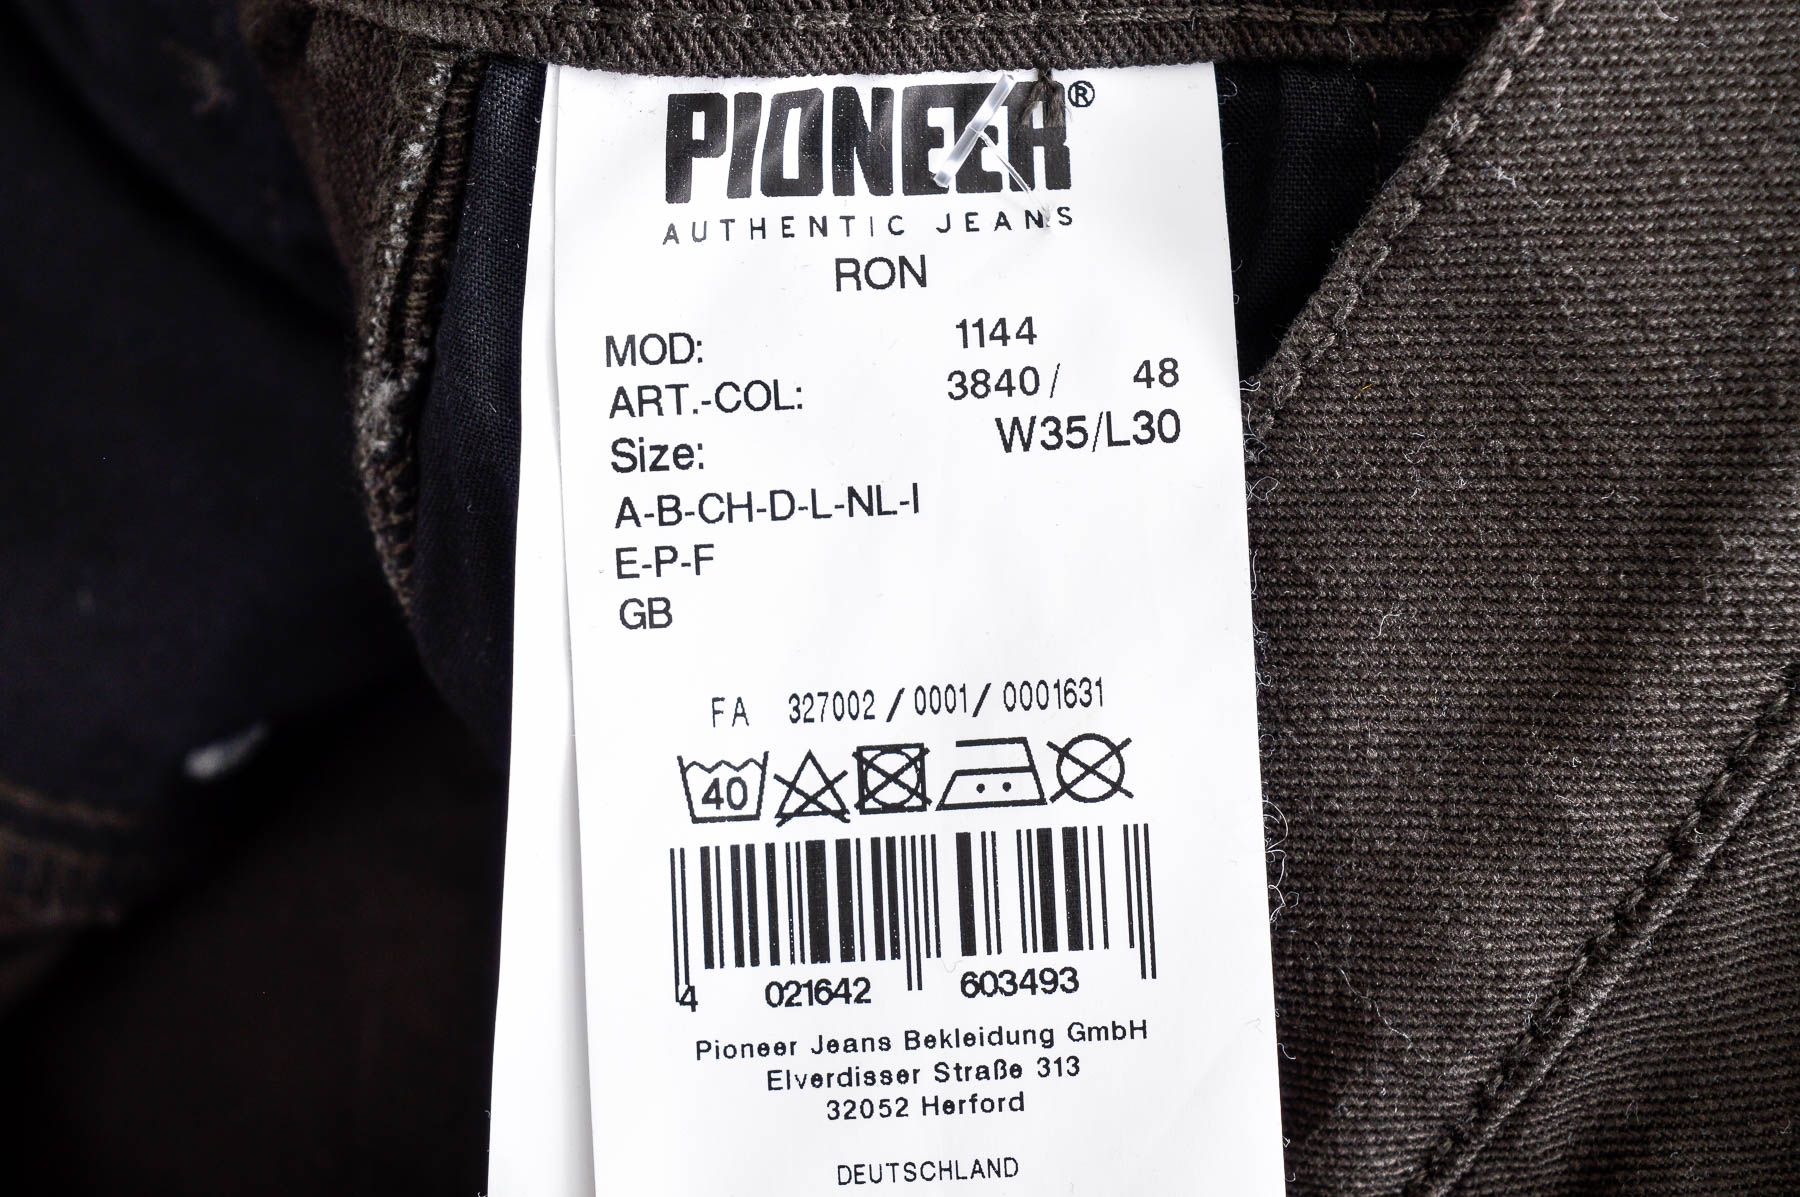 Men's trousers - Pioneer - 2